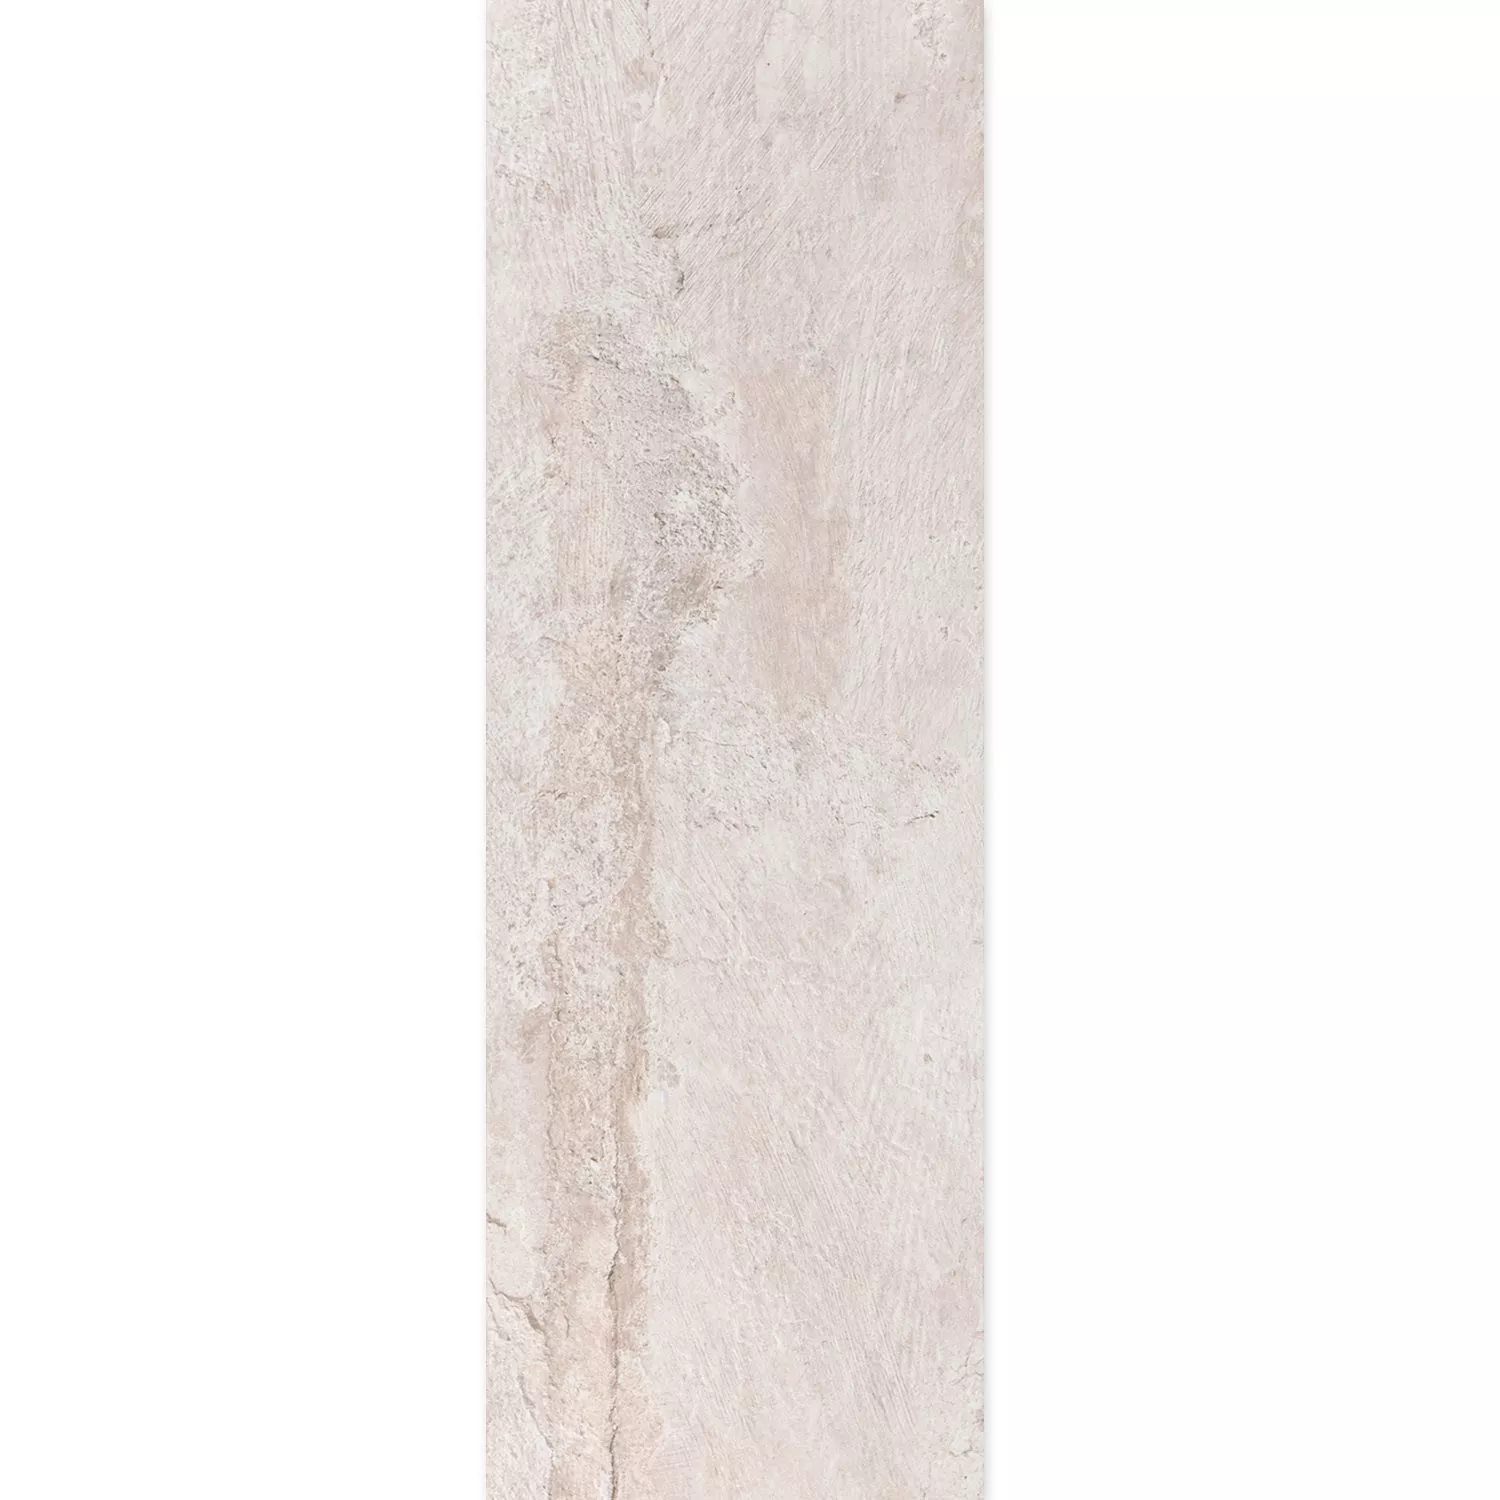 Próbka Płytki Podłogowe Kamień Optyka Polaris R10 Biały 30x120cm